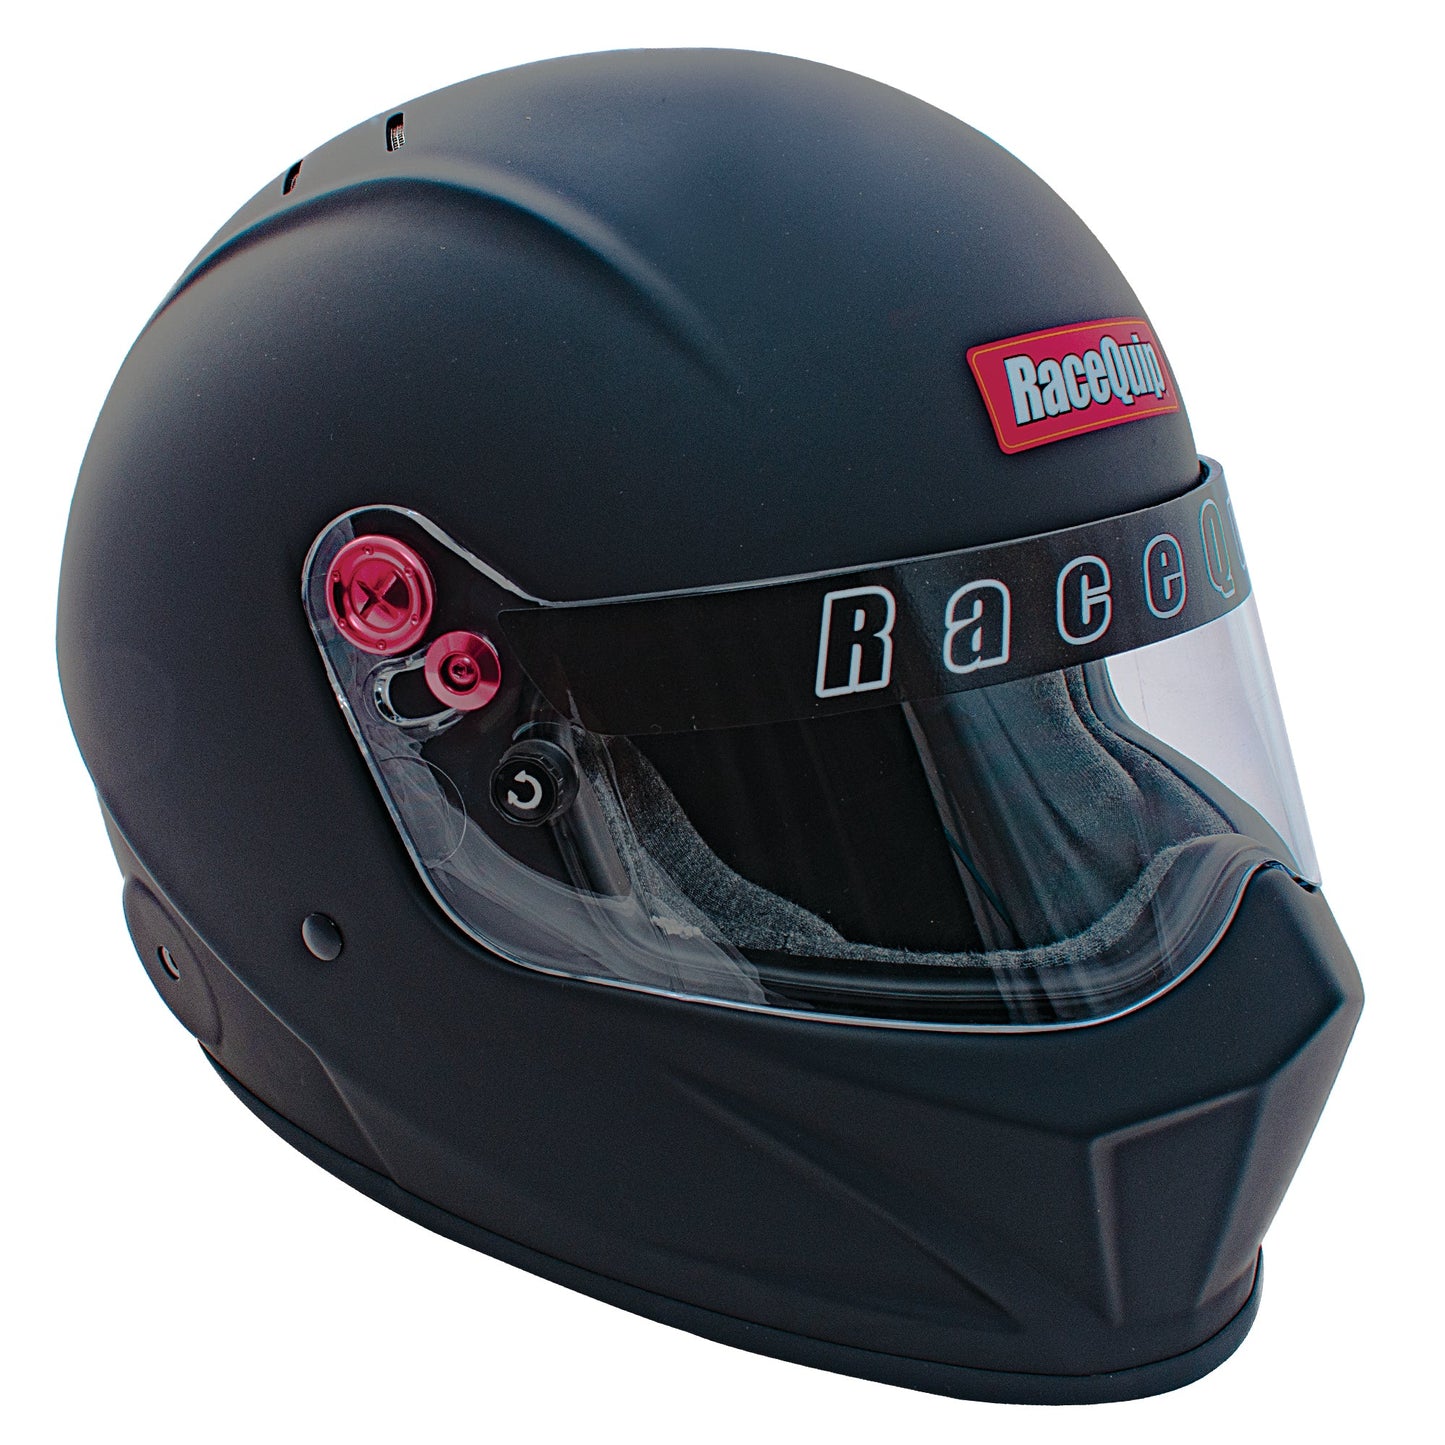 RaceQuip - VESTA20 Snell SA2020 Full Face Helmet